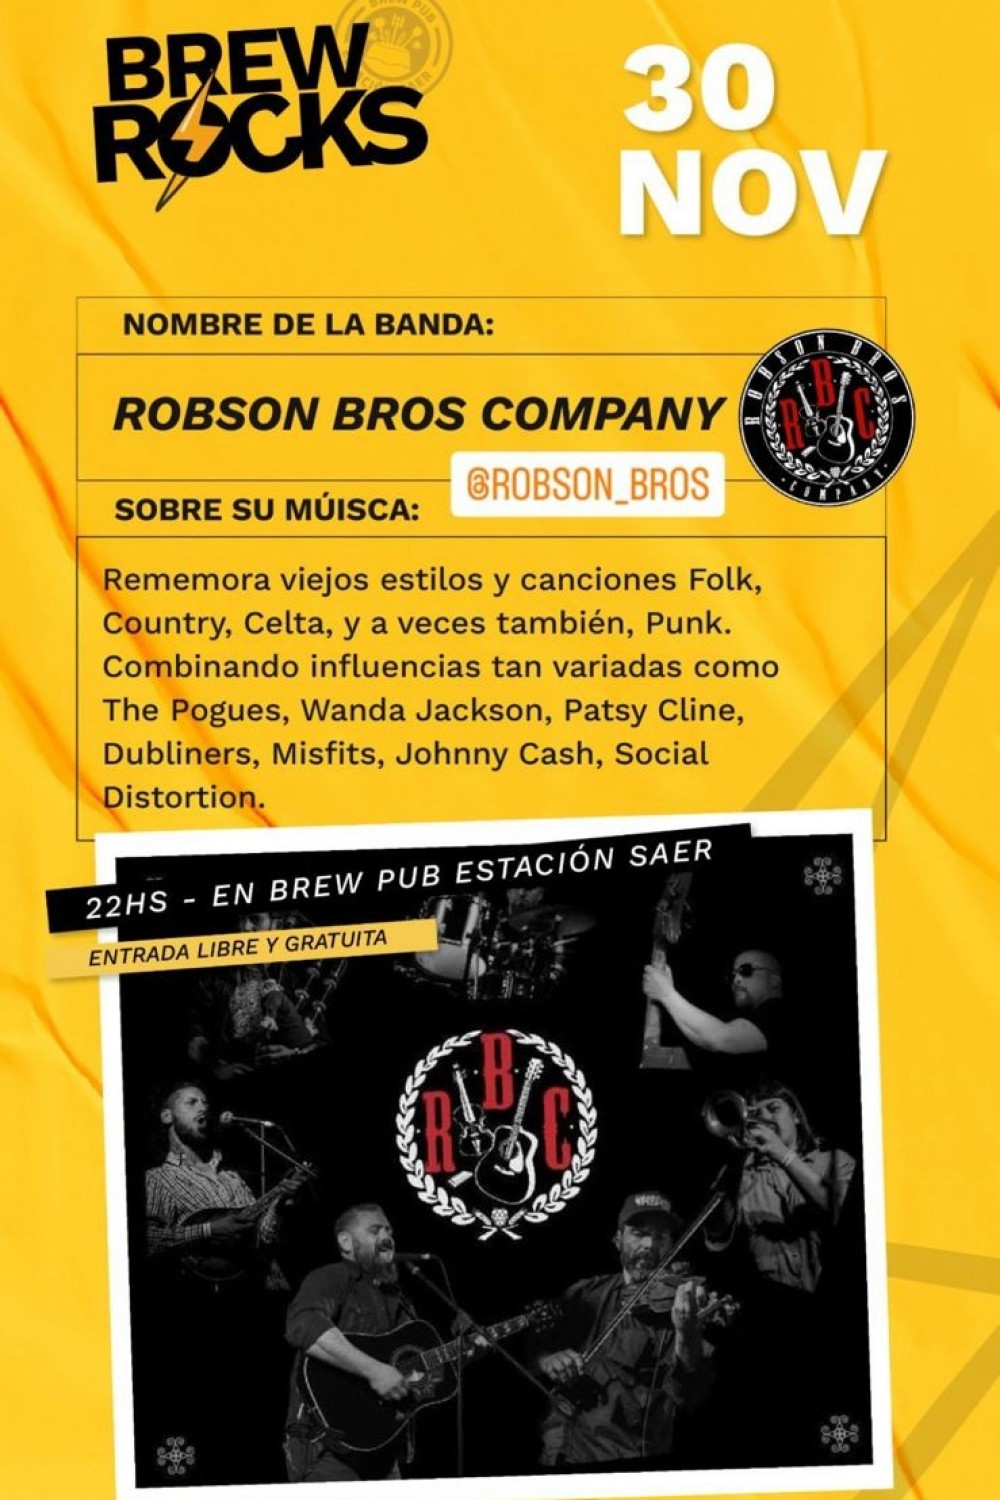 30/11 - Brew Rock presenta a Robson Bros Company